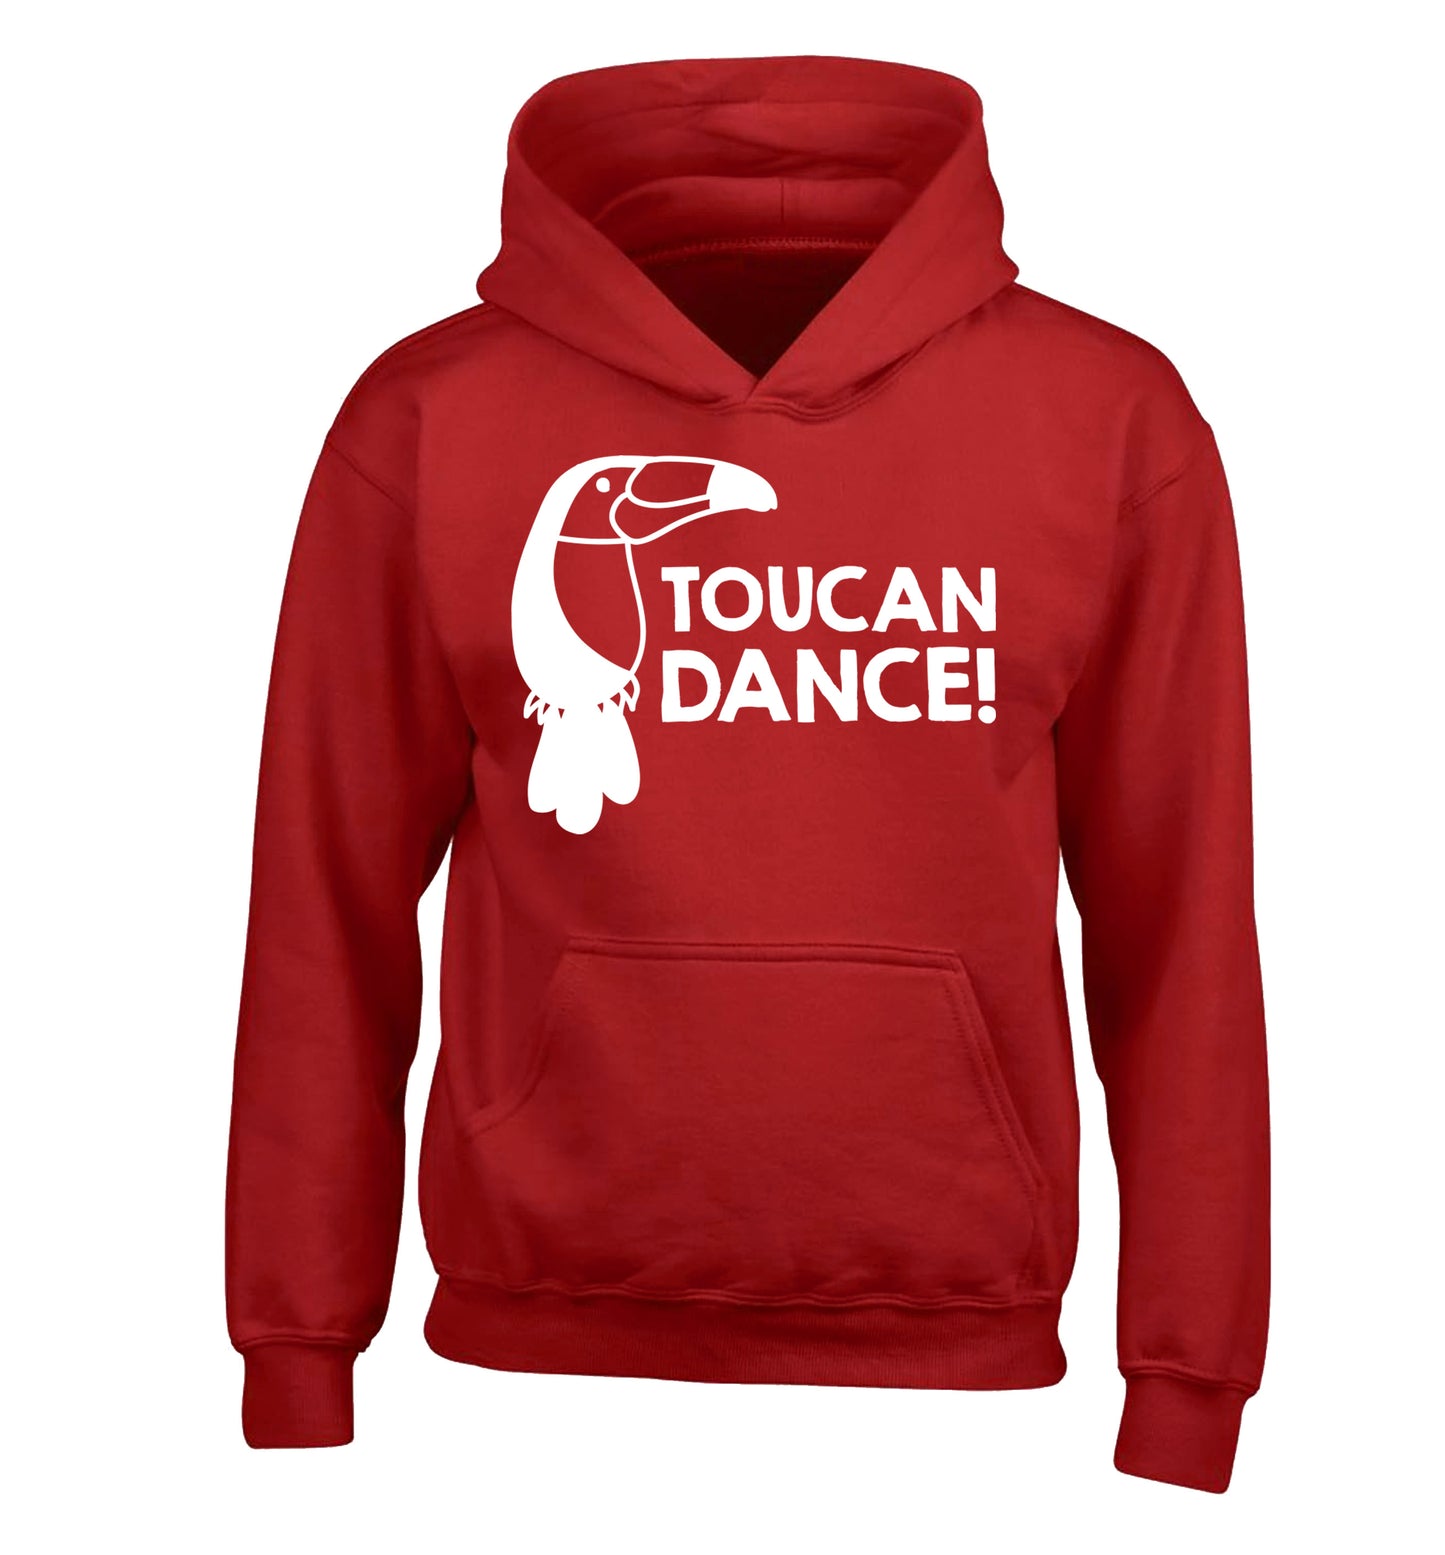 Toucan dance children's red hoodie 12-13 Years